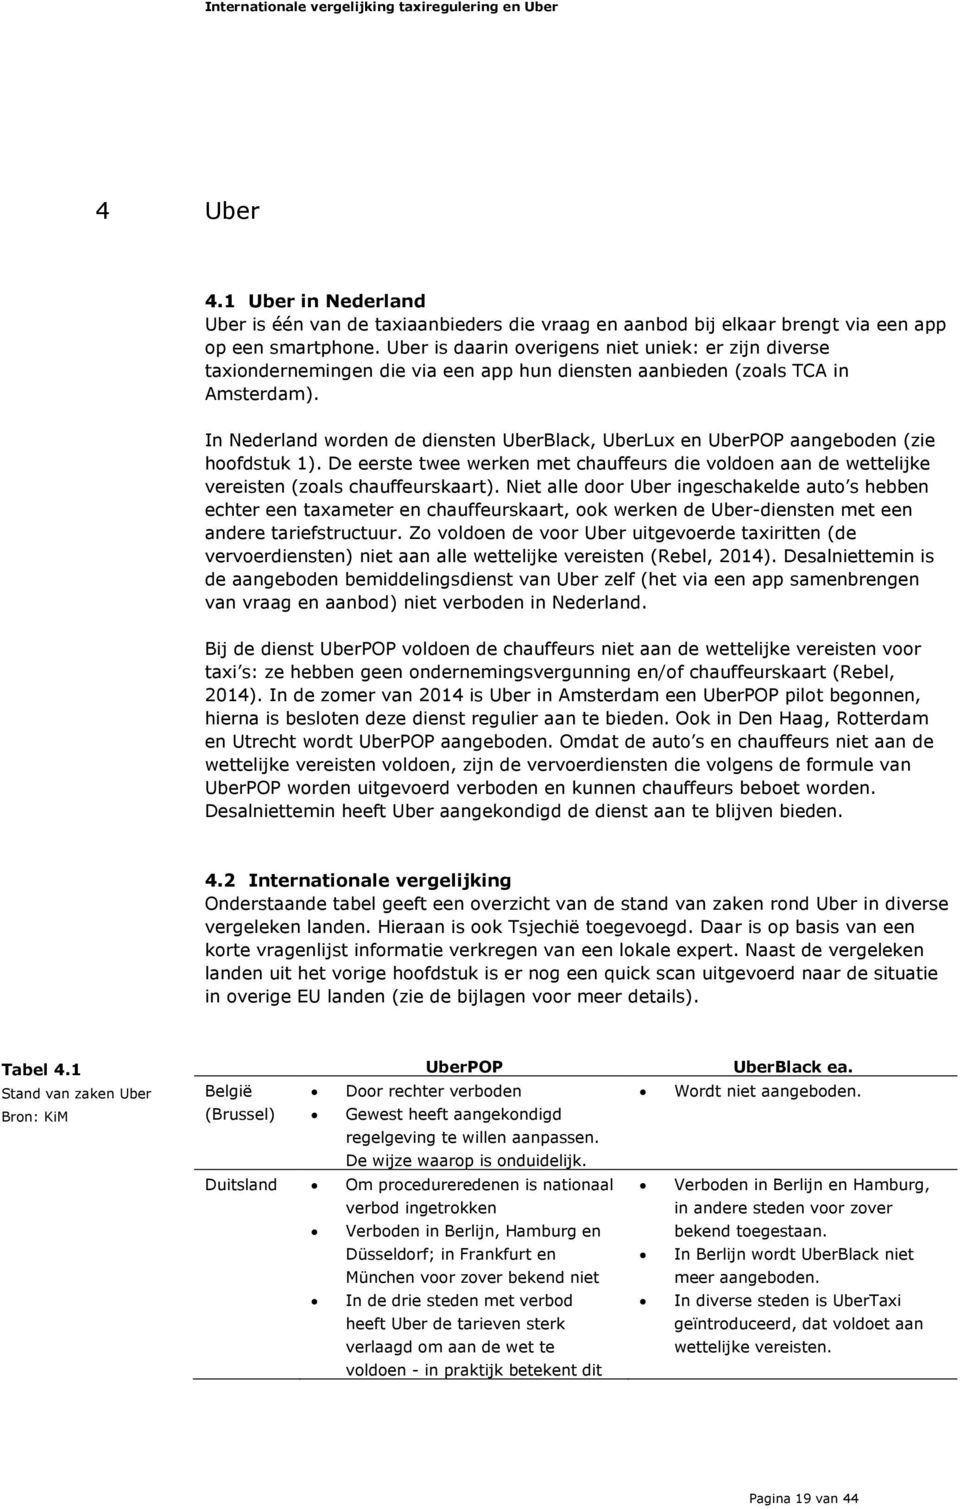 In Nederland worden de diensten UberBlack, UberLux en UberPOP aangeboden (zie hoofdstuk 1). De eerste twee werken met chauffeurs die voldoen aan de wettelijke vereisten (zoals chauffeurskaart).